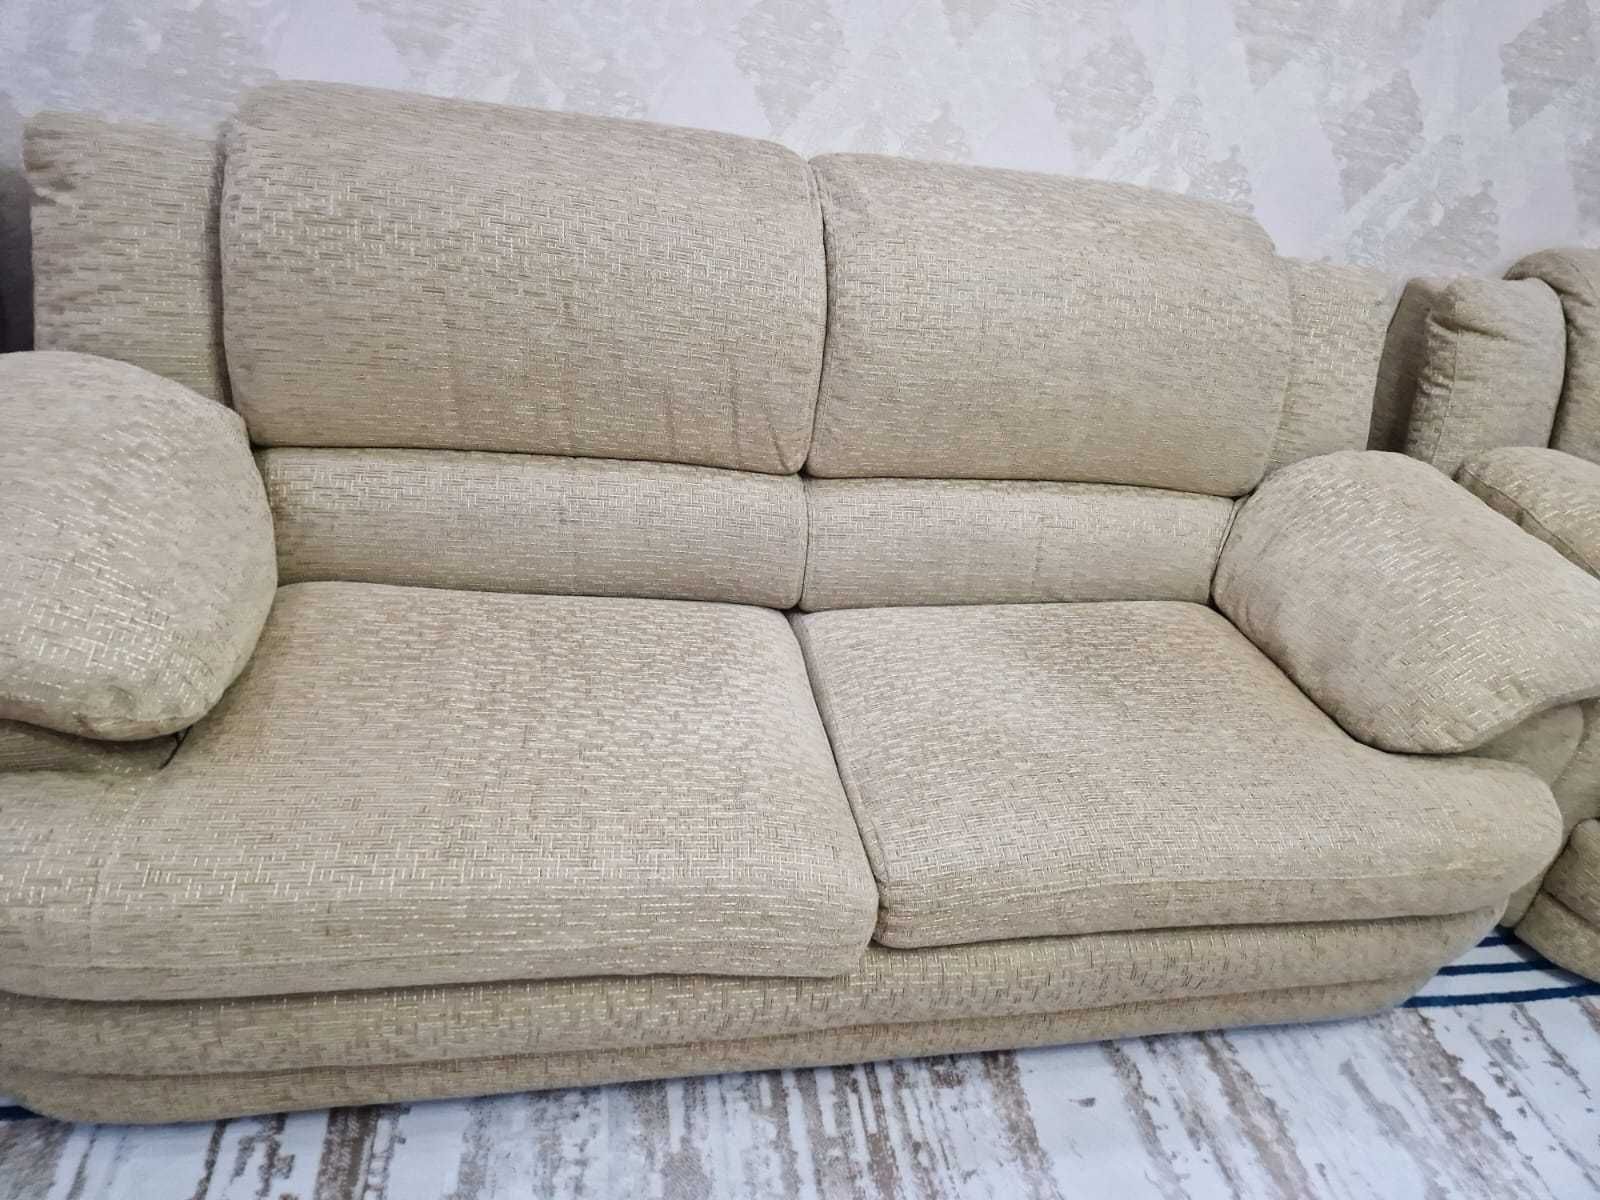 диван с креслами